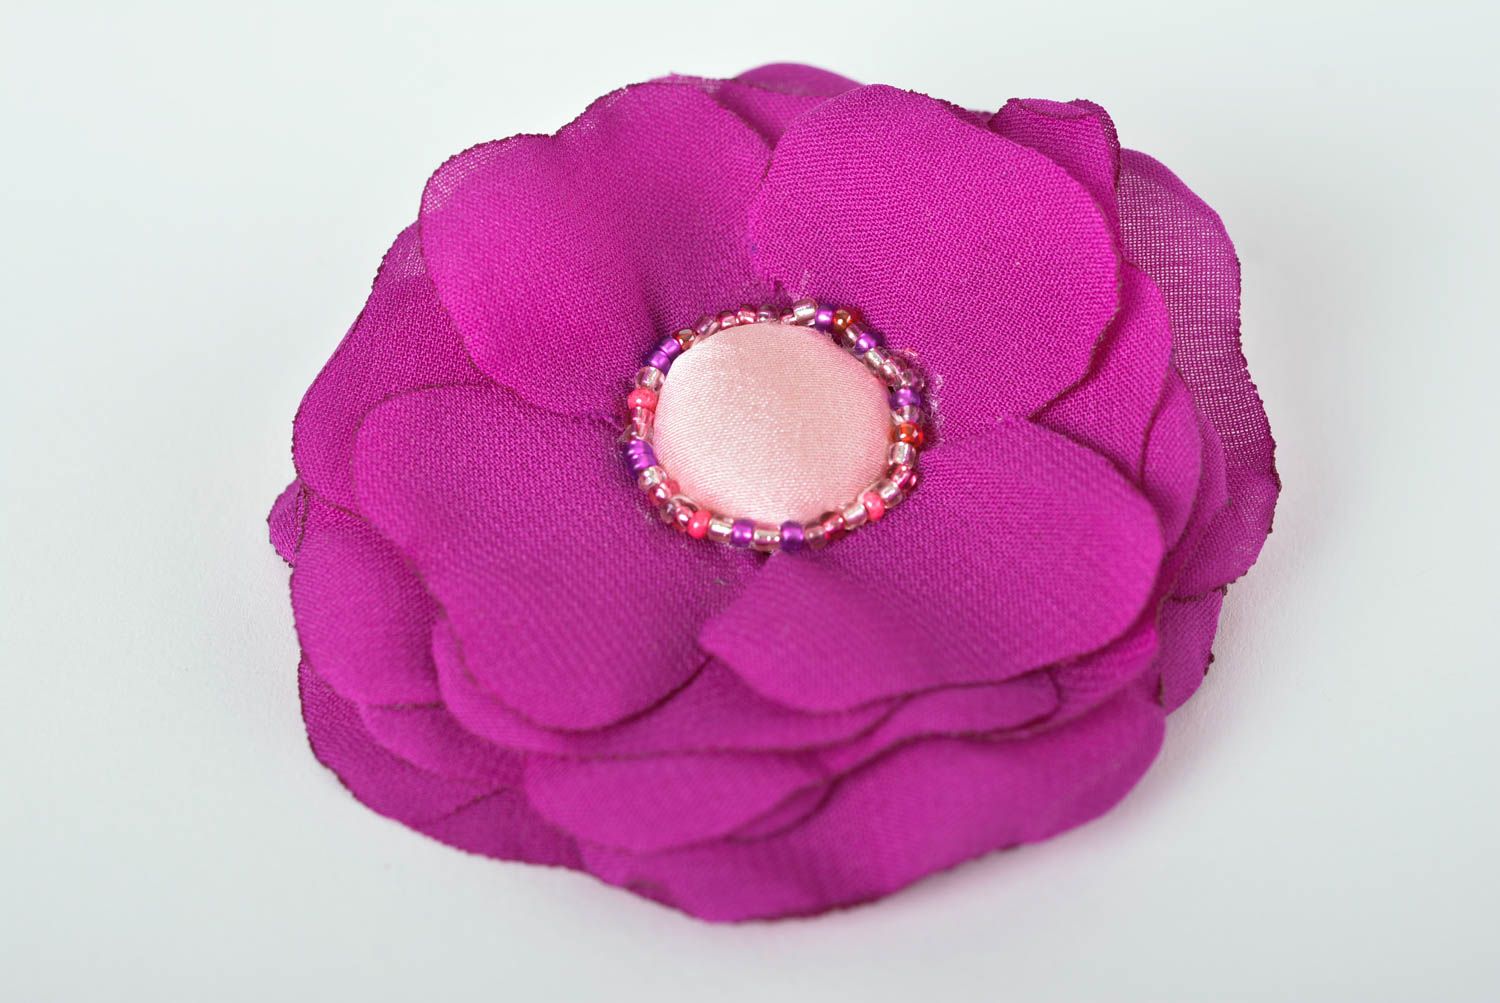 Брошь ручной работы текстильная брошь цветок фиолетовый дизайнерское украшение фото 1